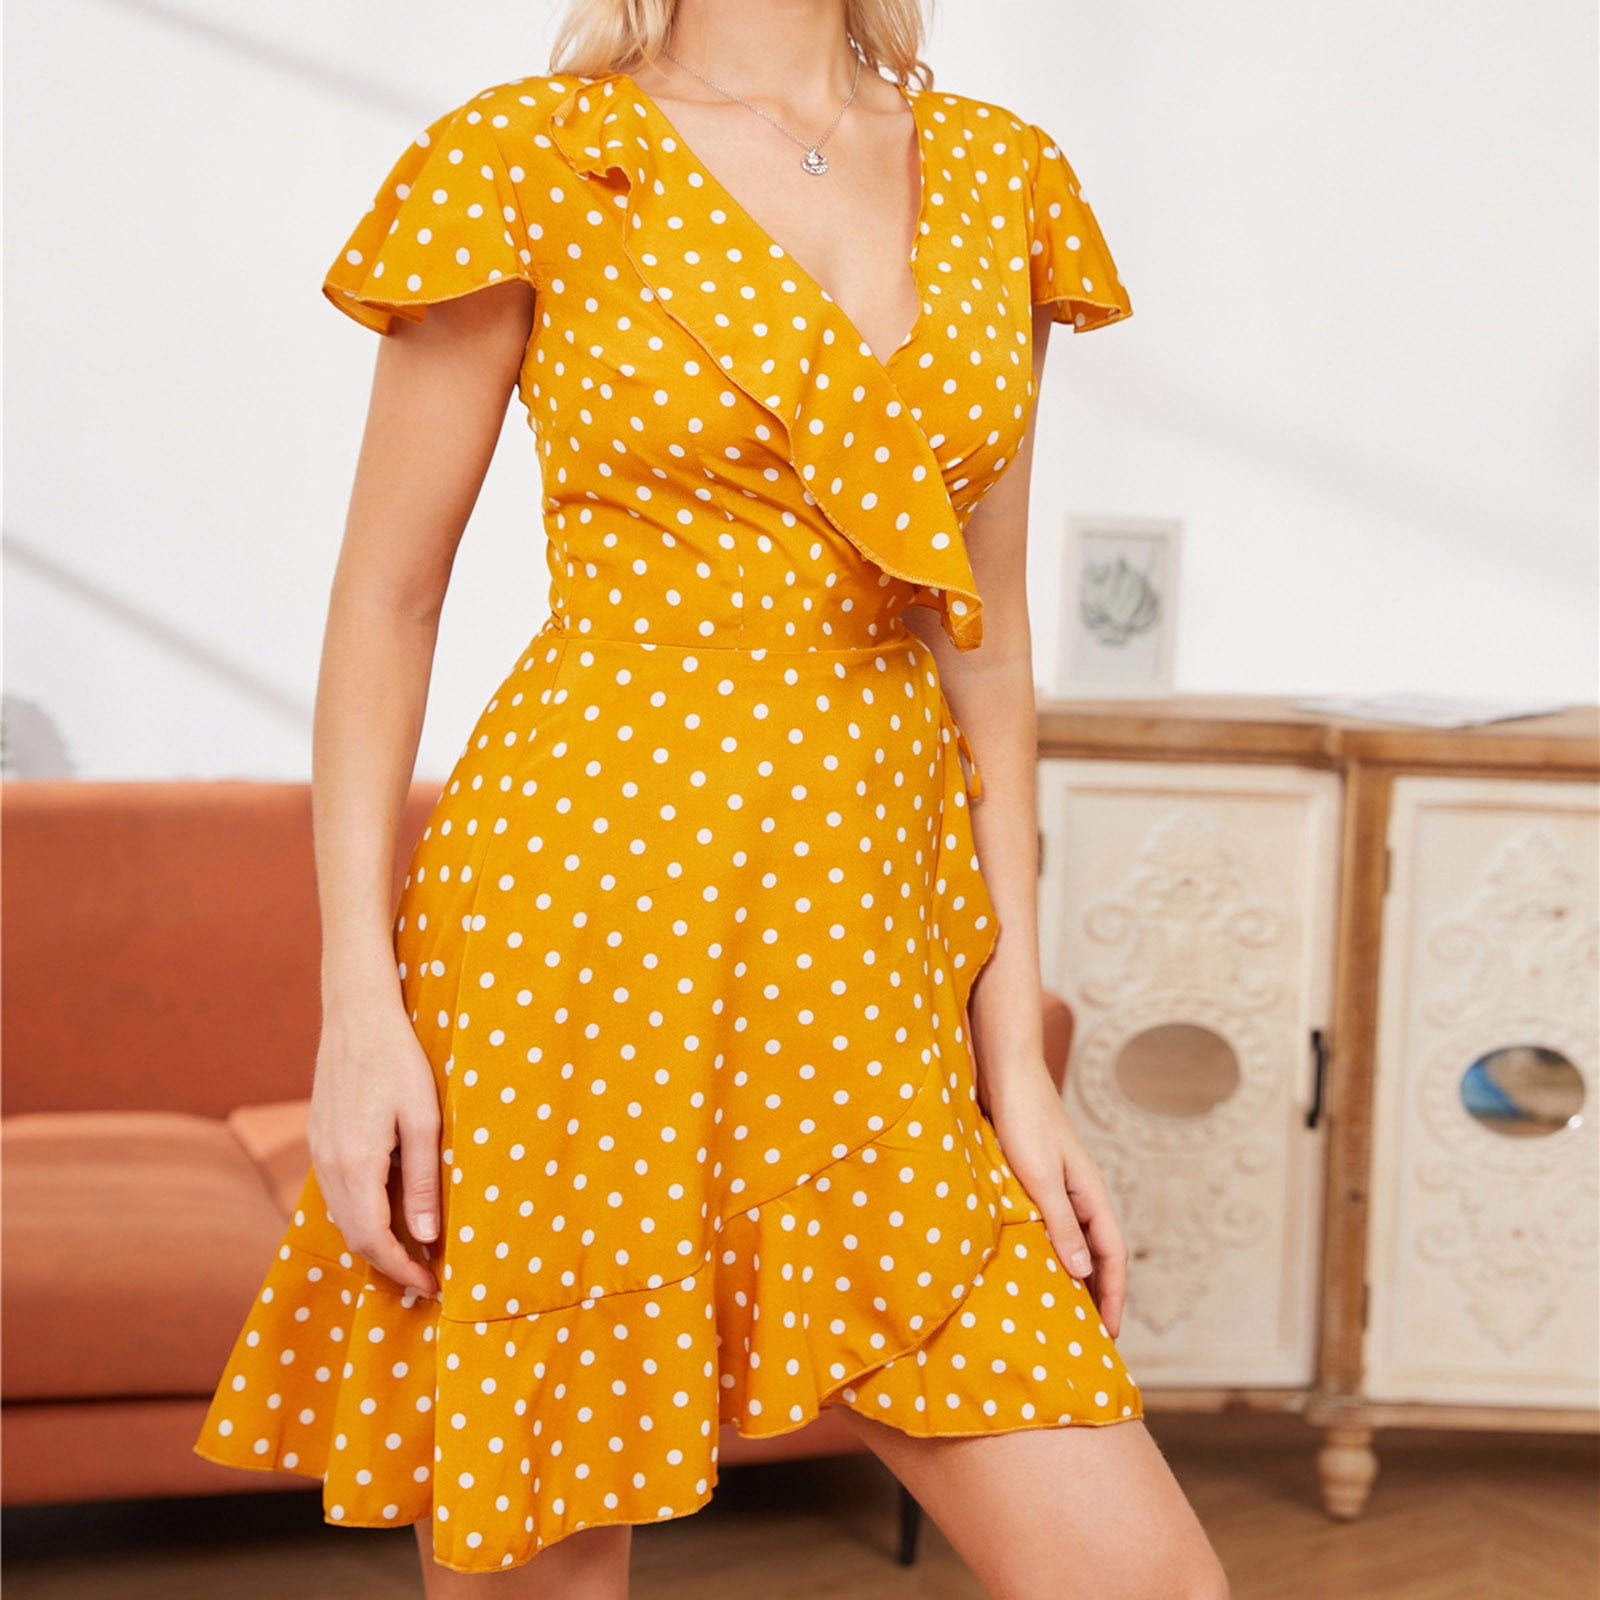 Dresses for Women,Womens Casual Summer Polka Dot Print Sleeveless Dress A-Line Maxi Mini Sundress Crewneck Short Dress 